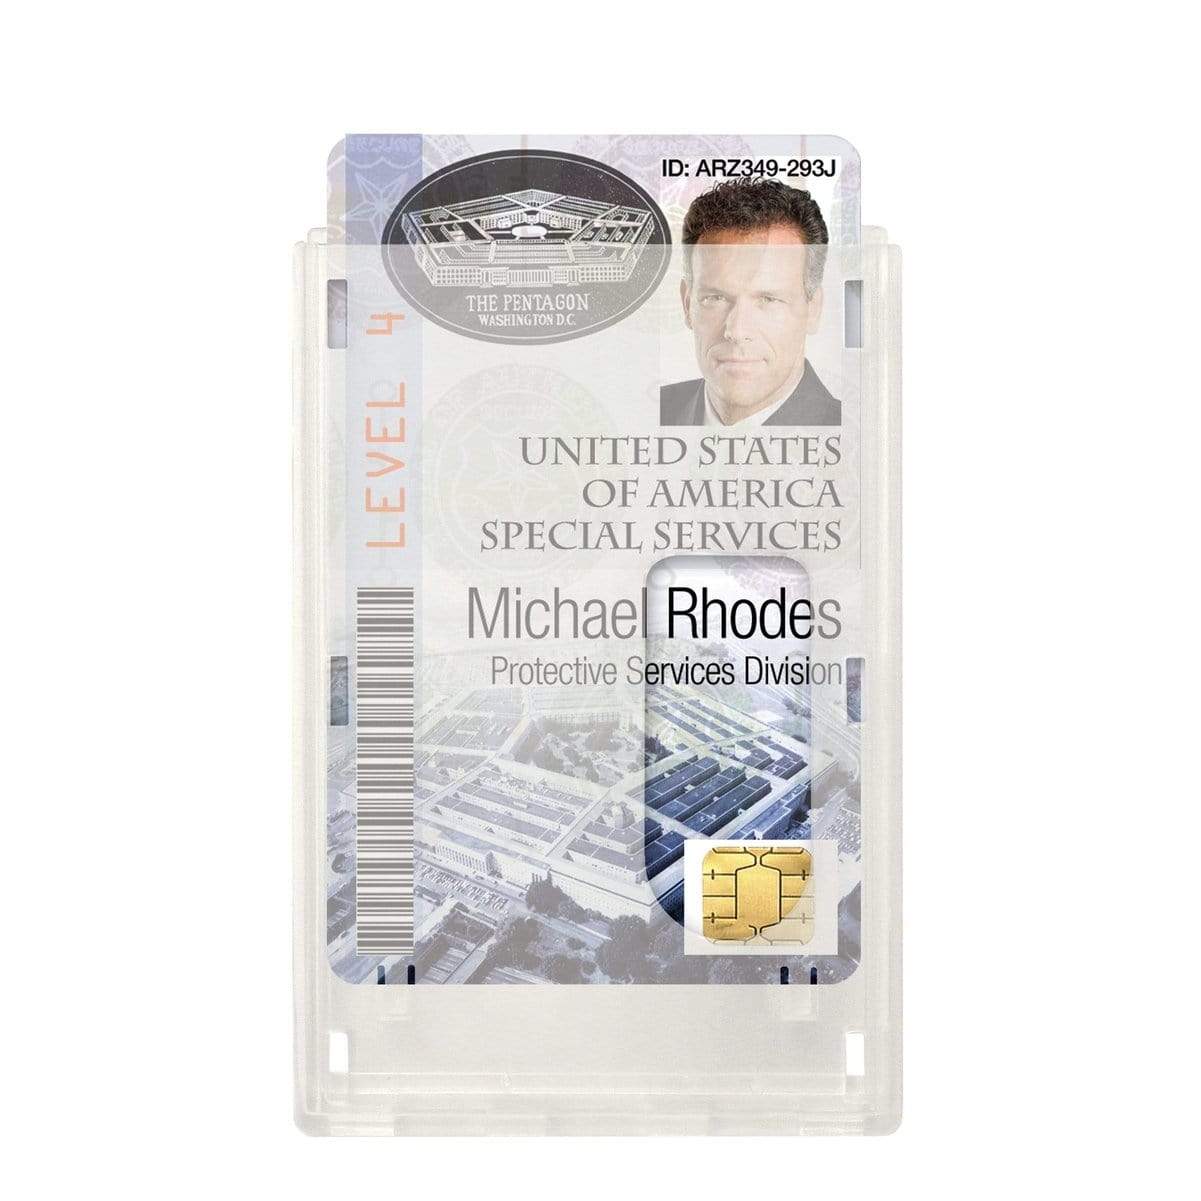 Rigidwear Clear Vertical 2-Card Badge Holder 1840-6560 (Jam P/N 706-NN2) 1840-6560